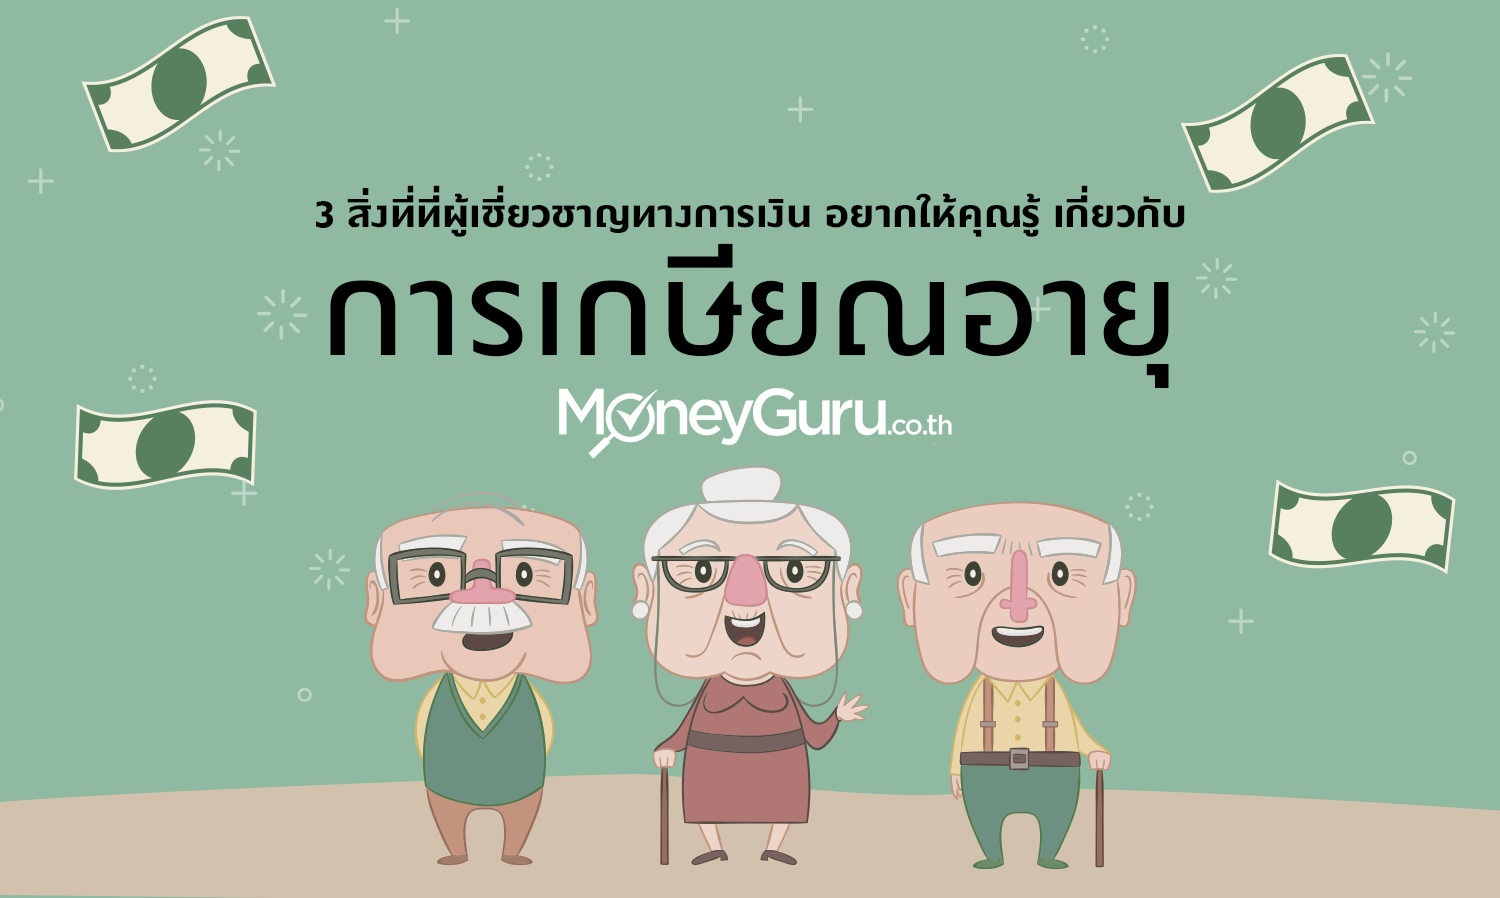 3 สิ่งที่ที่ผู้เชี่ยวชาญทางการเงินอยากให้คุณรู้ เกี่ยวกับ การเกษียณอายุ